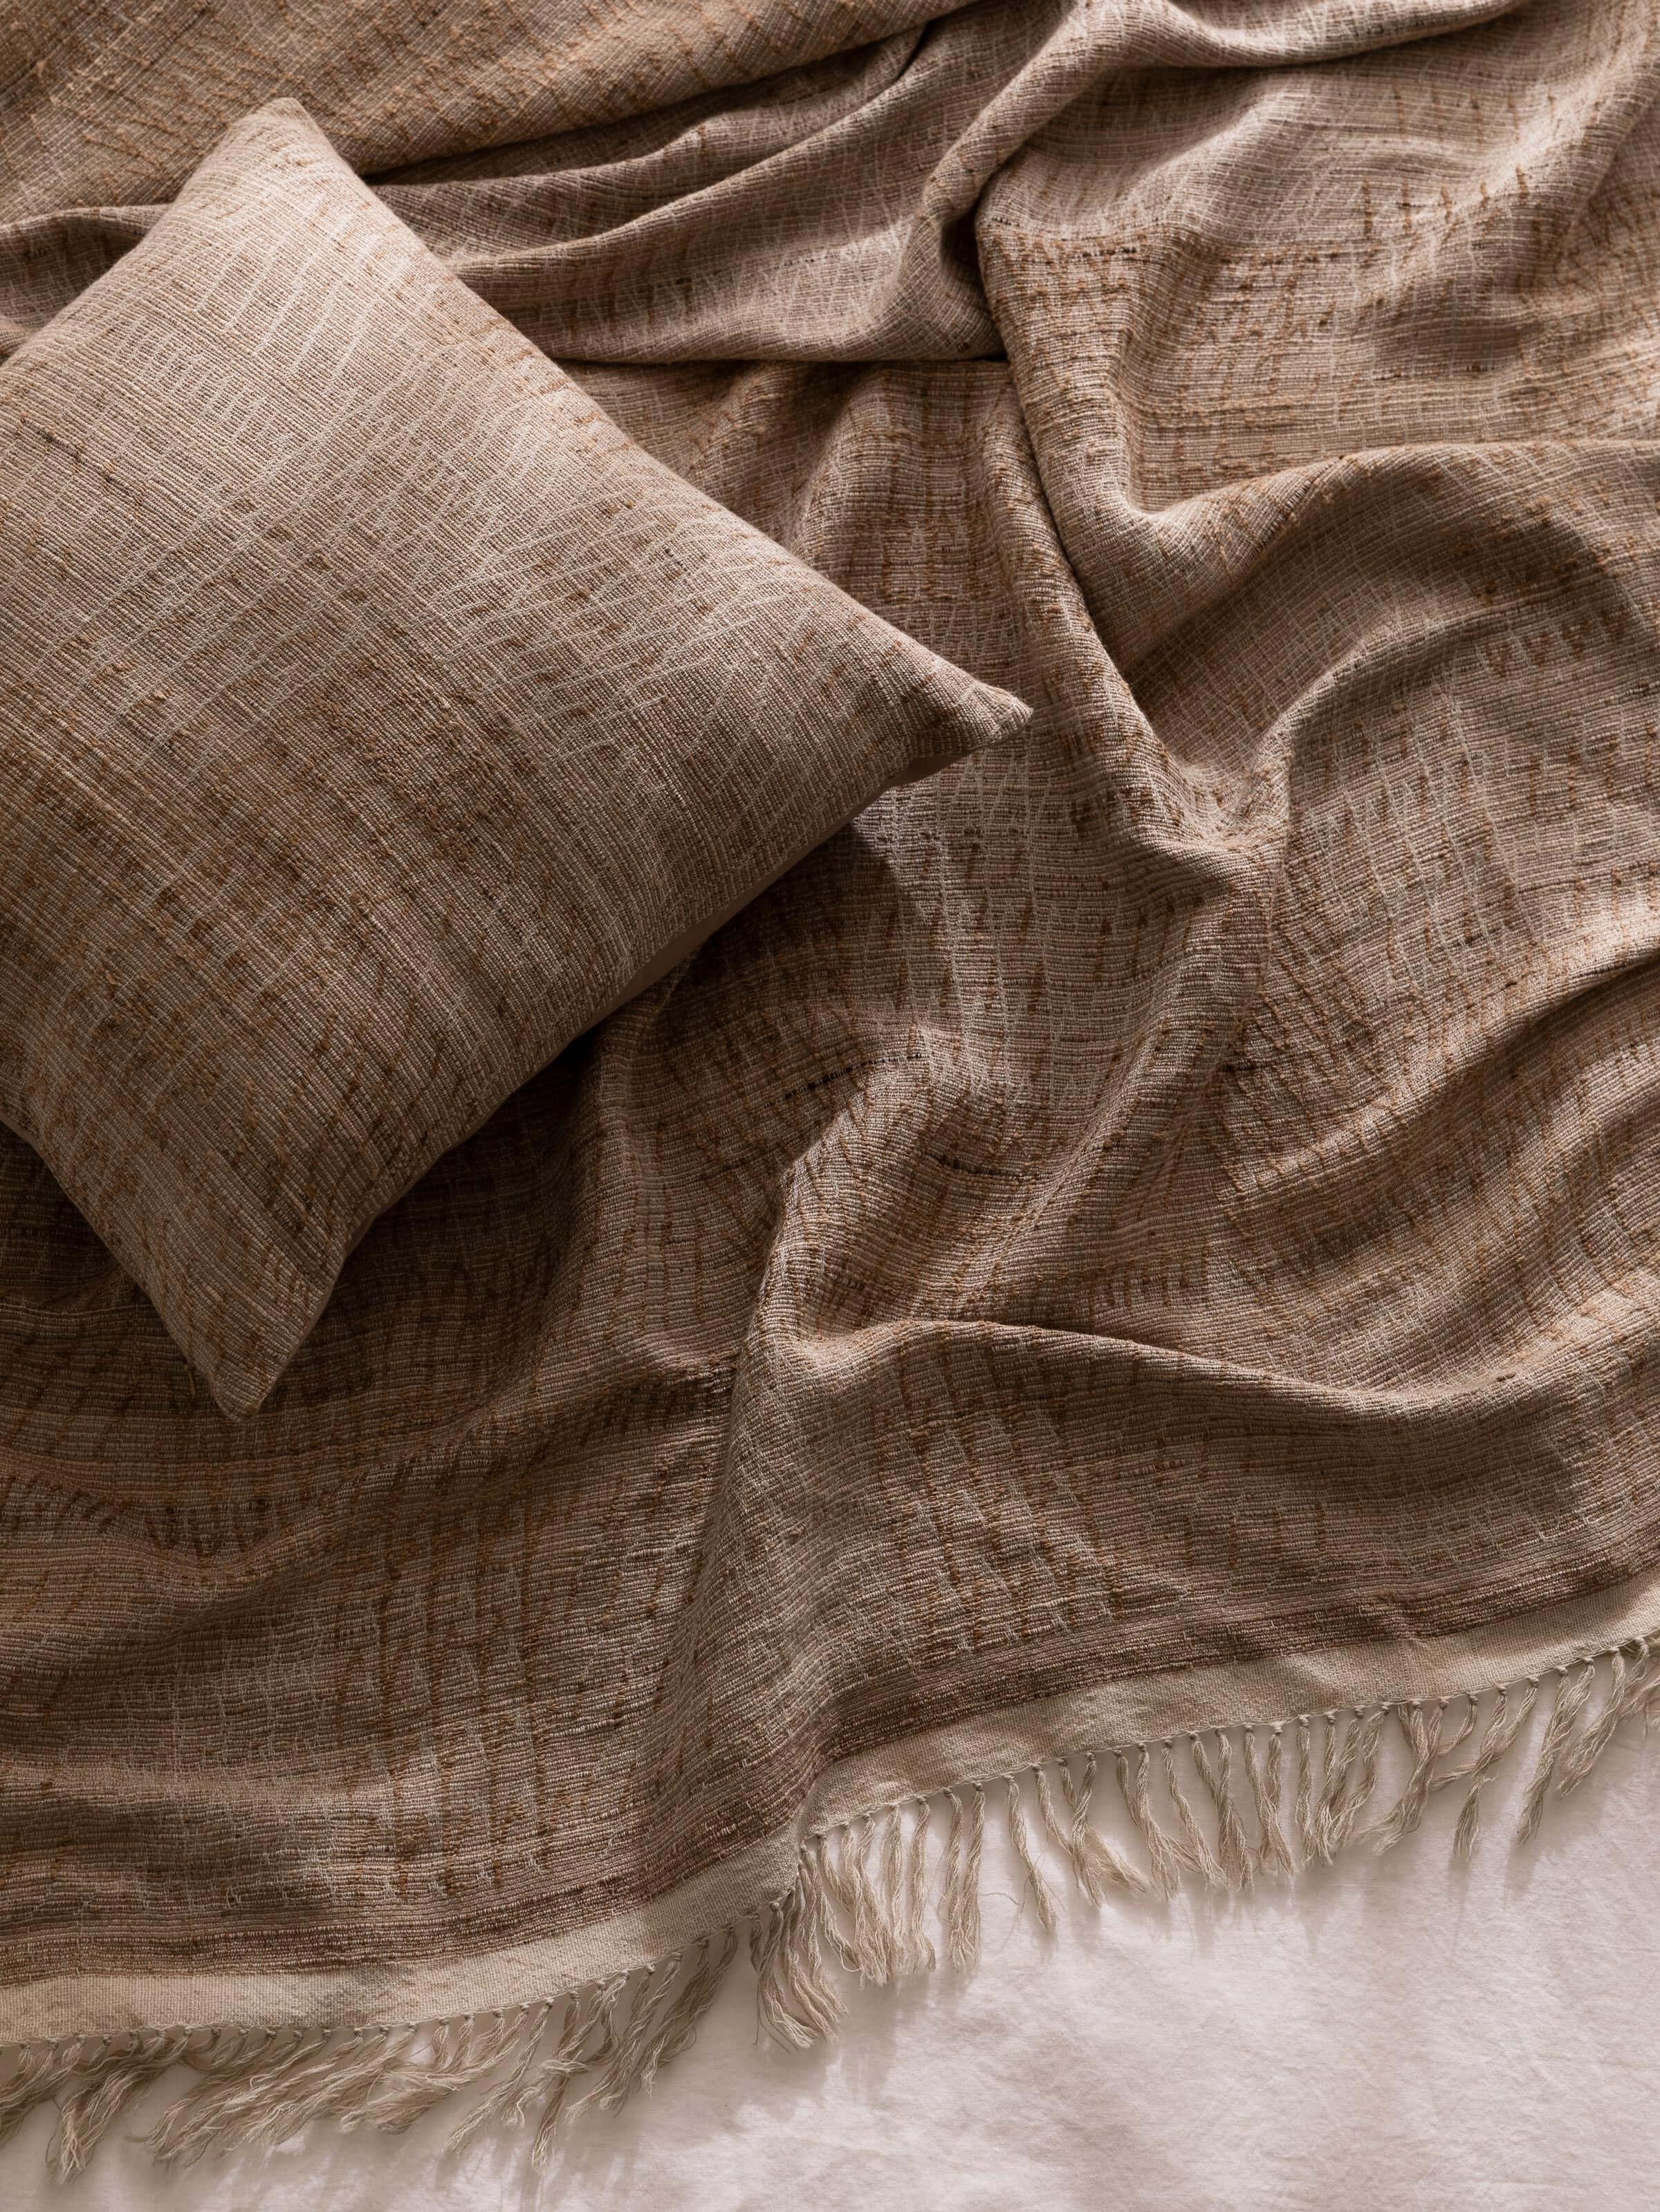 Everley Wool & Silk Cushion